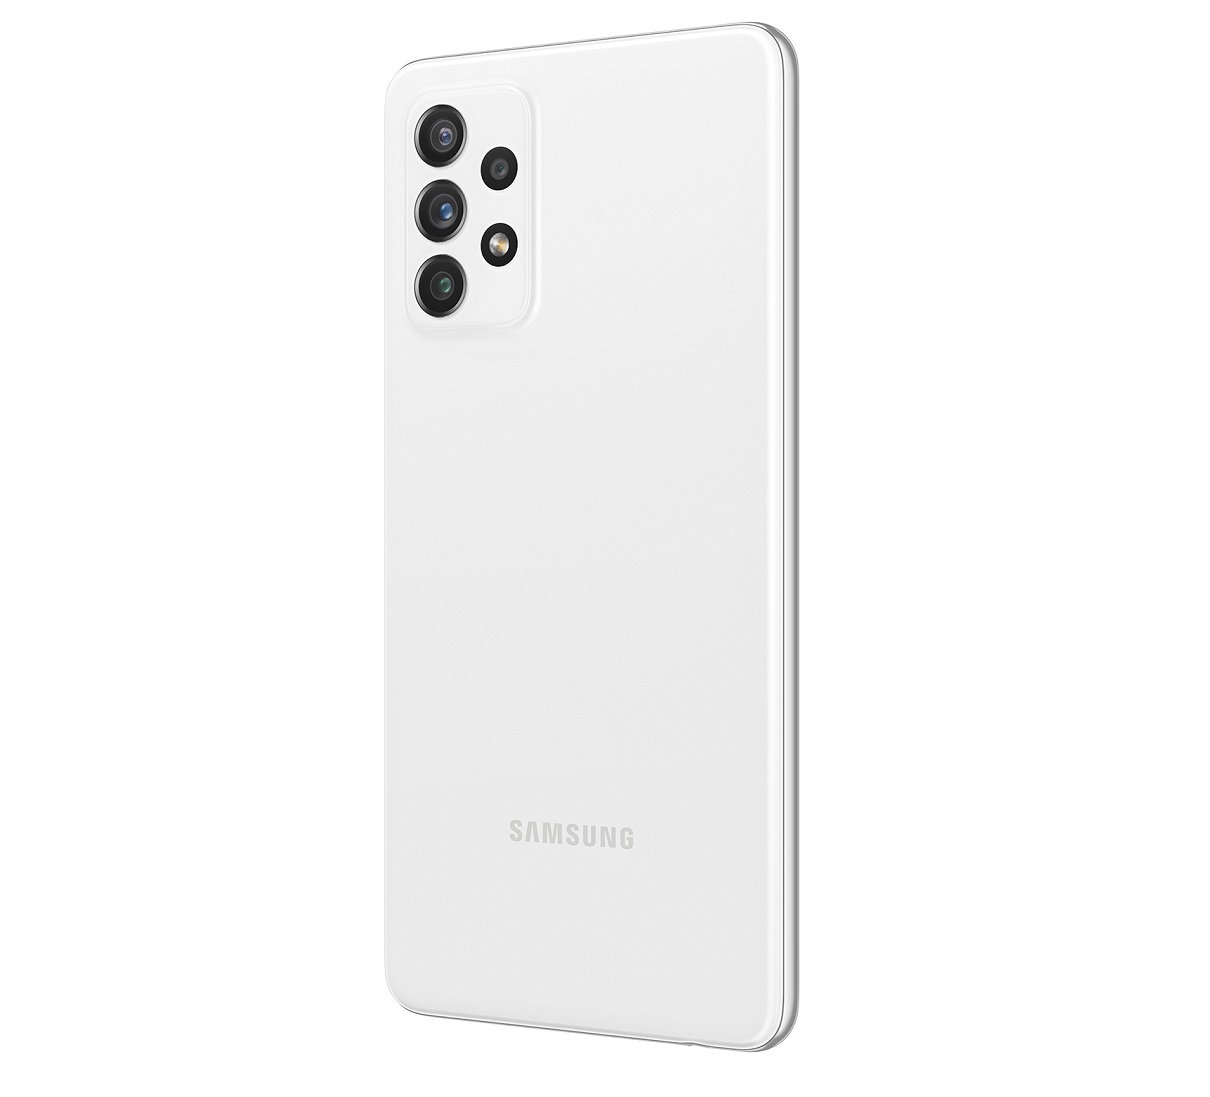 Samsung выпустил в России смартфон Galaxy A72 с 90 Гц AMOLED дисплеем, Snapdragon 720G, NFC и емким аккумулятором